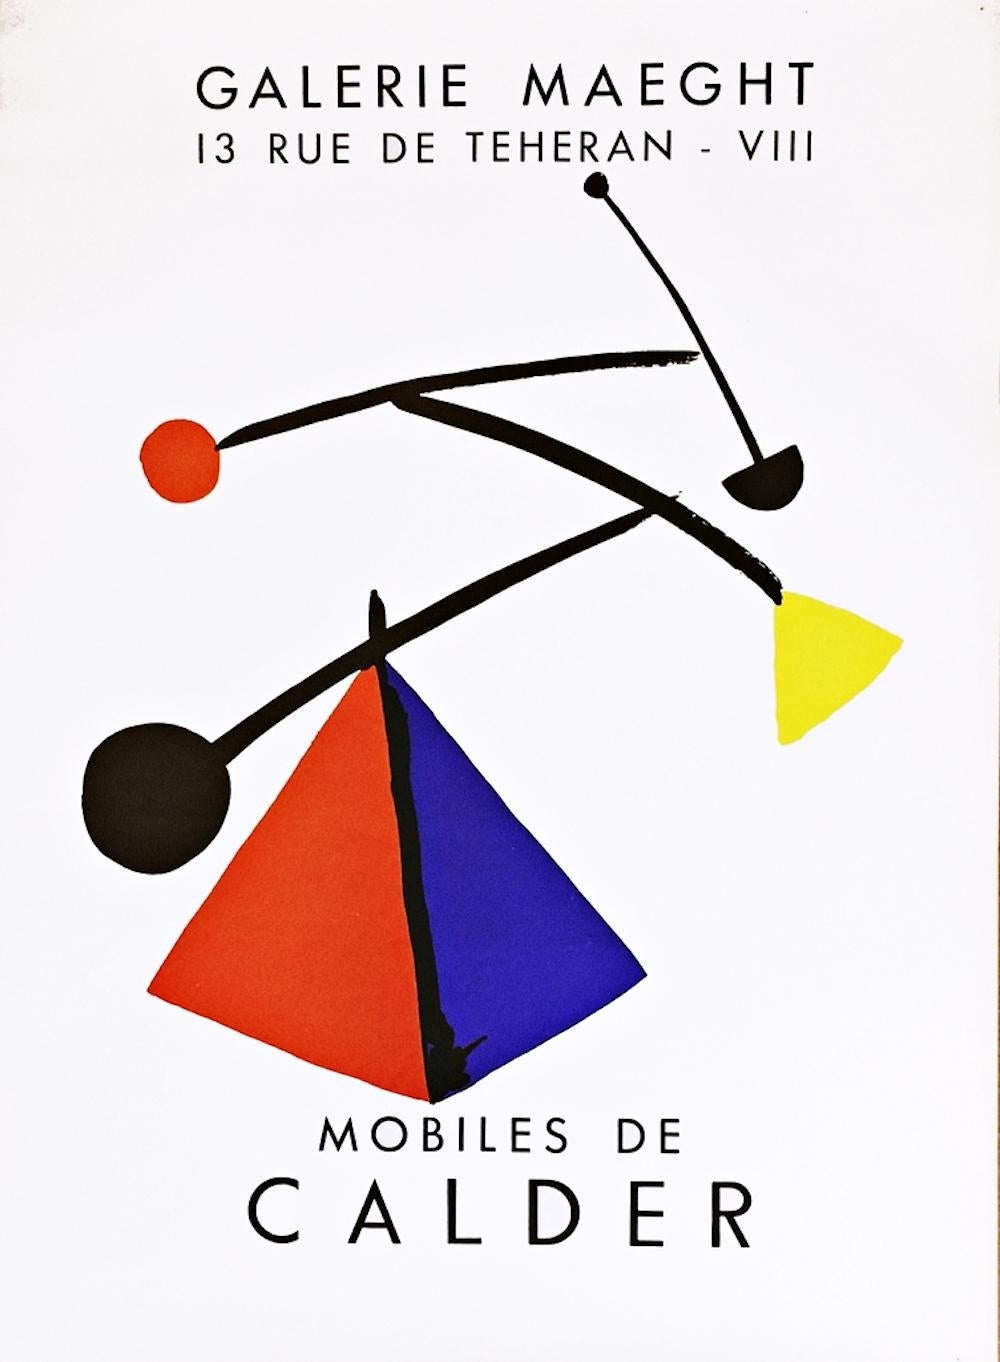 Mobiles de Calder, affiche cinétique abstraite d'Alexander Calder, moderne du milieu du siècle dernier